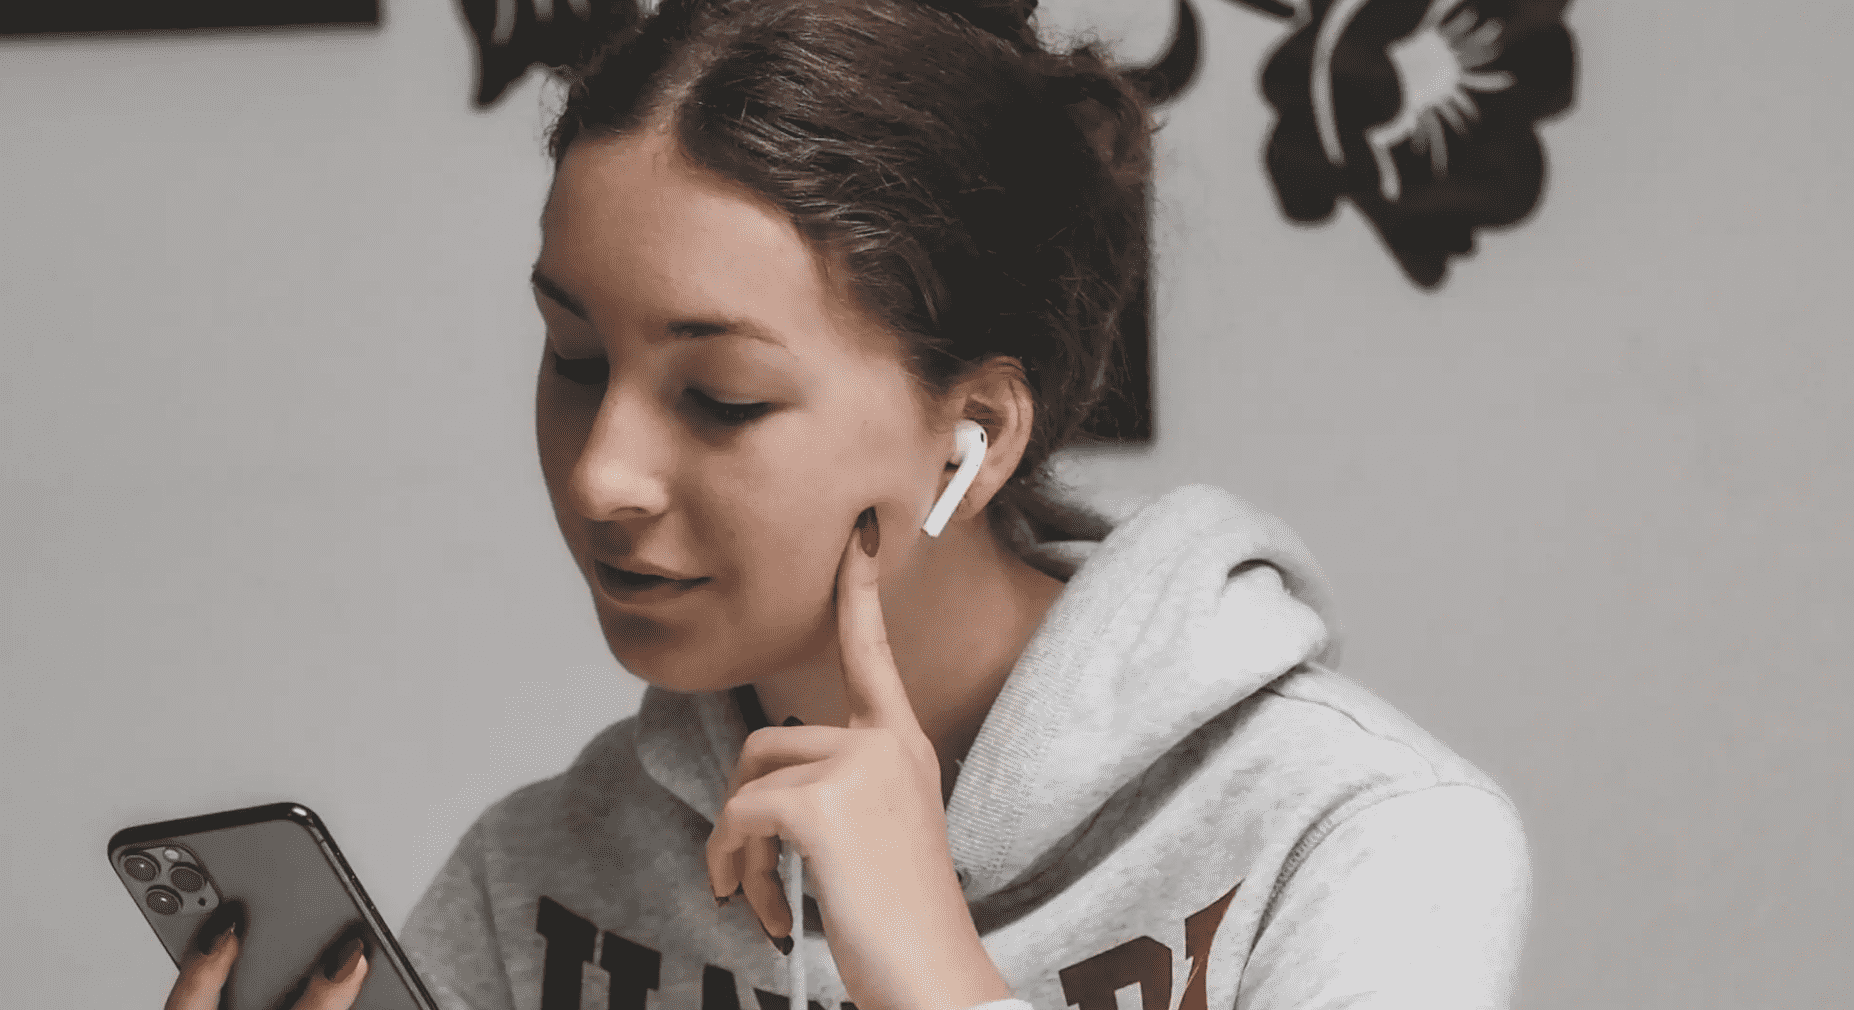 Chica con audífonos revisando su teléfono